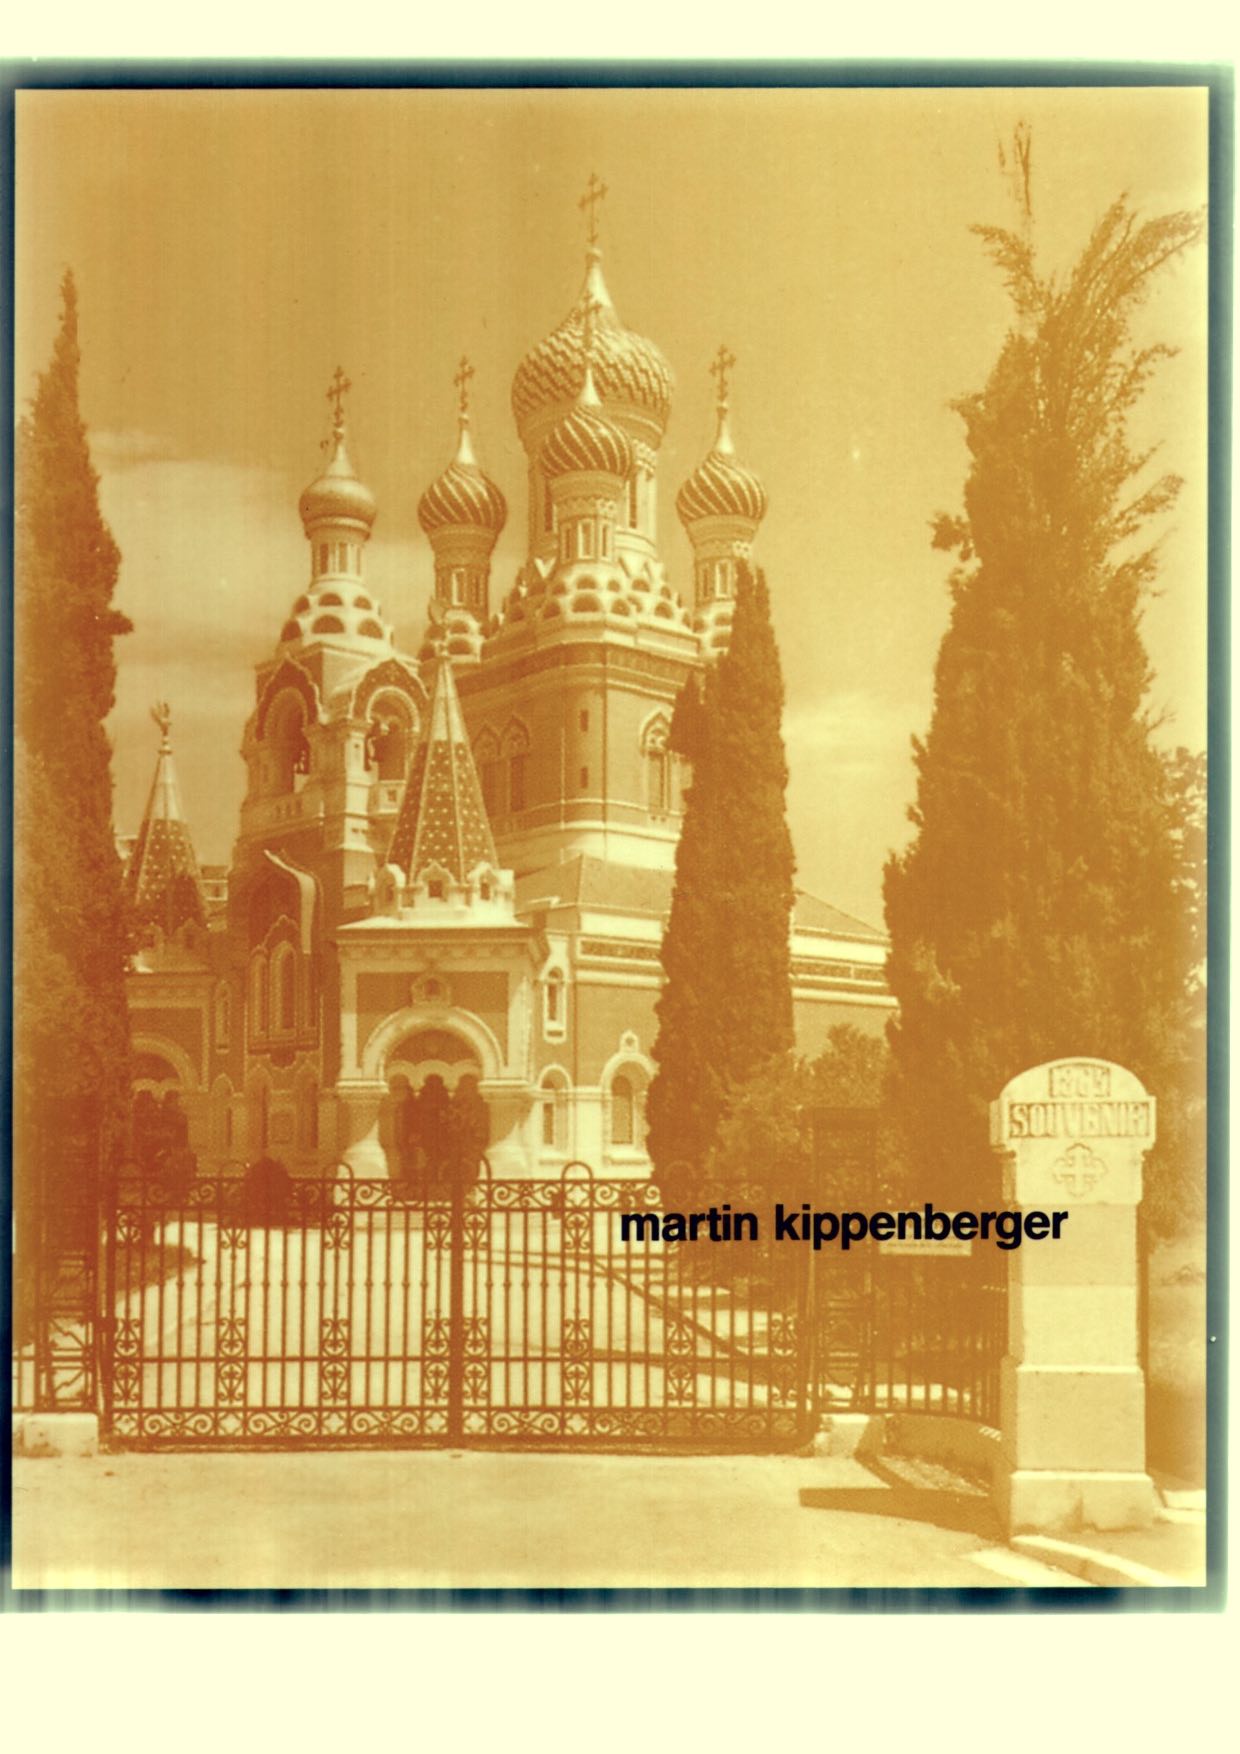 KIPPENBERGER, Martin - Martin Kippenberger